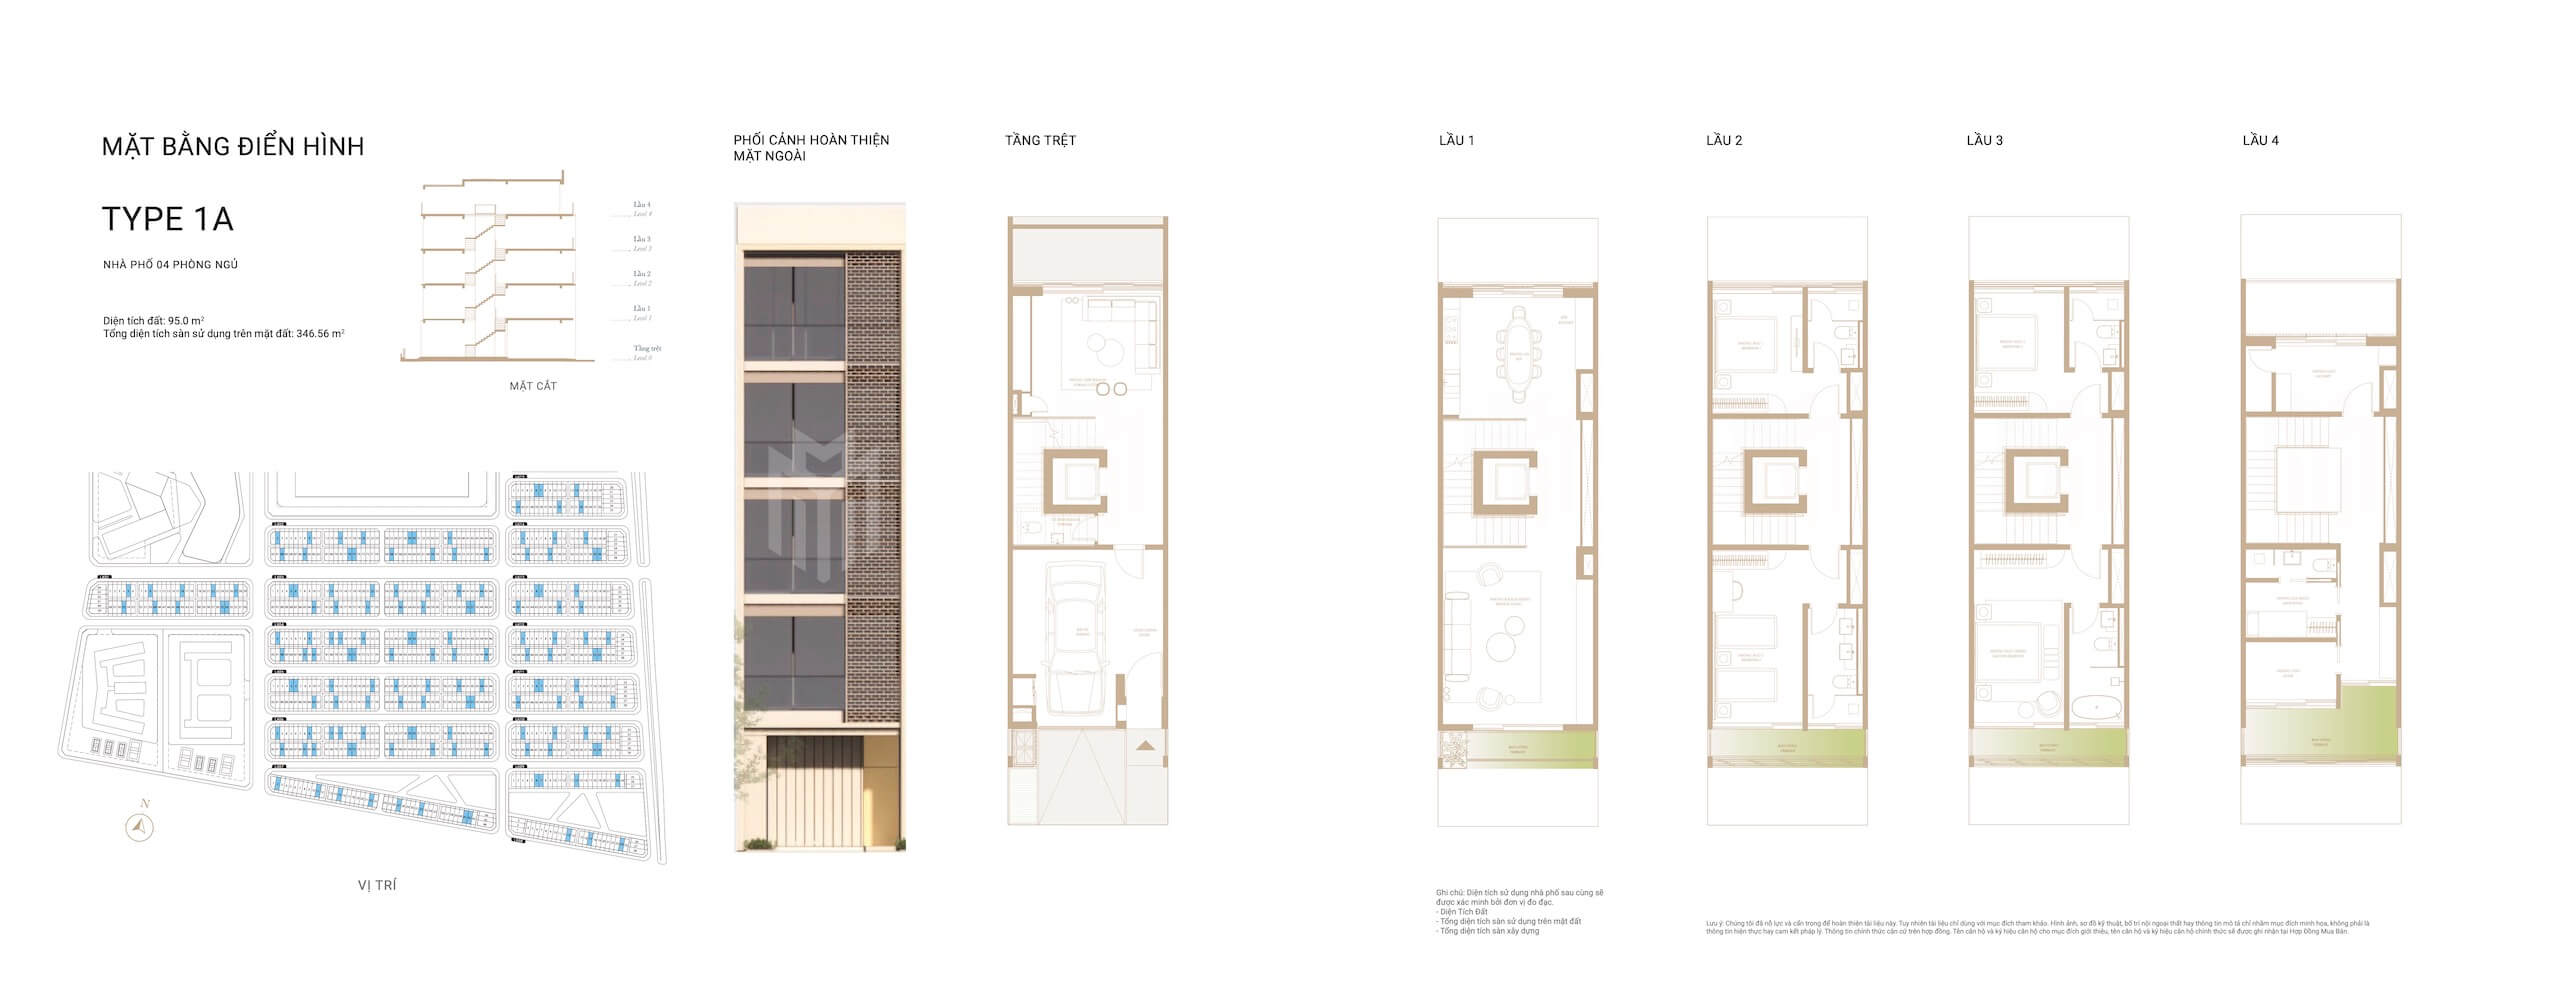 Mặt bằng nhà phố shophouse dự án The Global City Masterise Homes Thủ Đức layout loại Type 1A phân khu SOHO